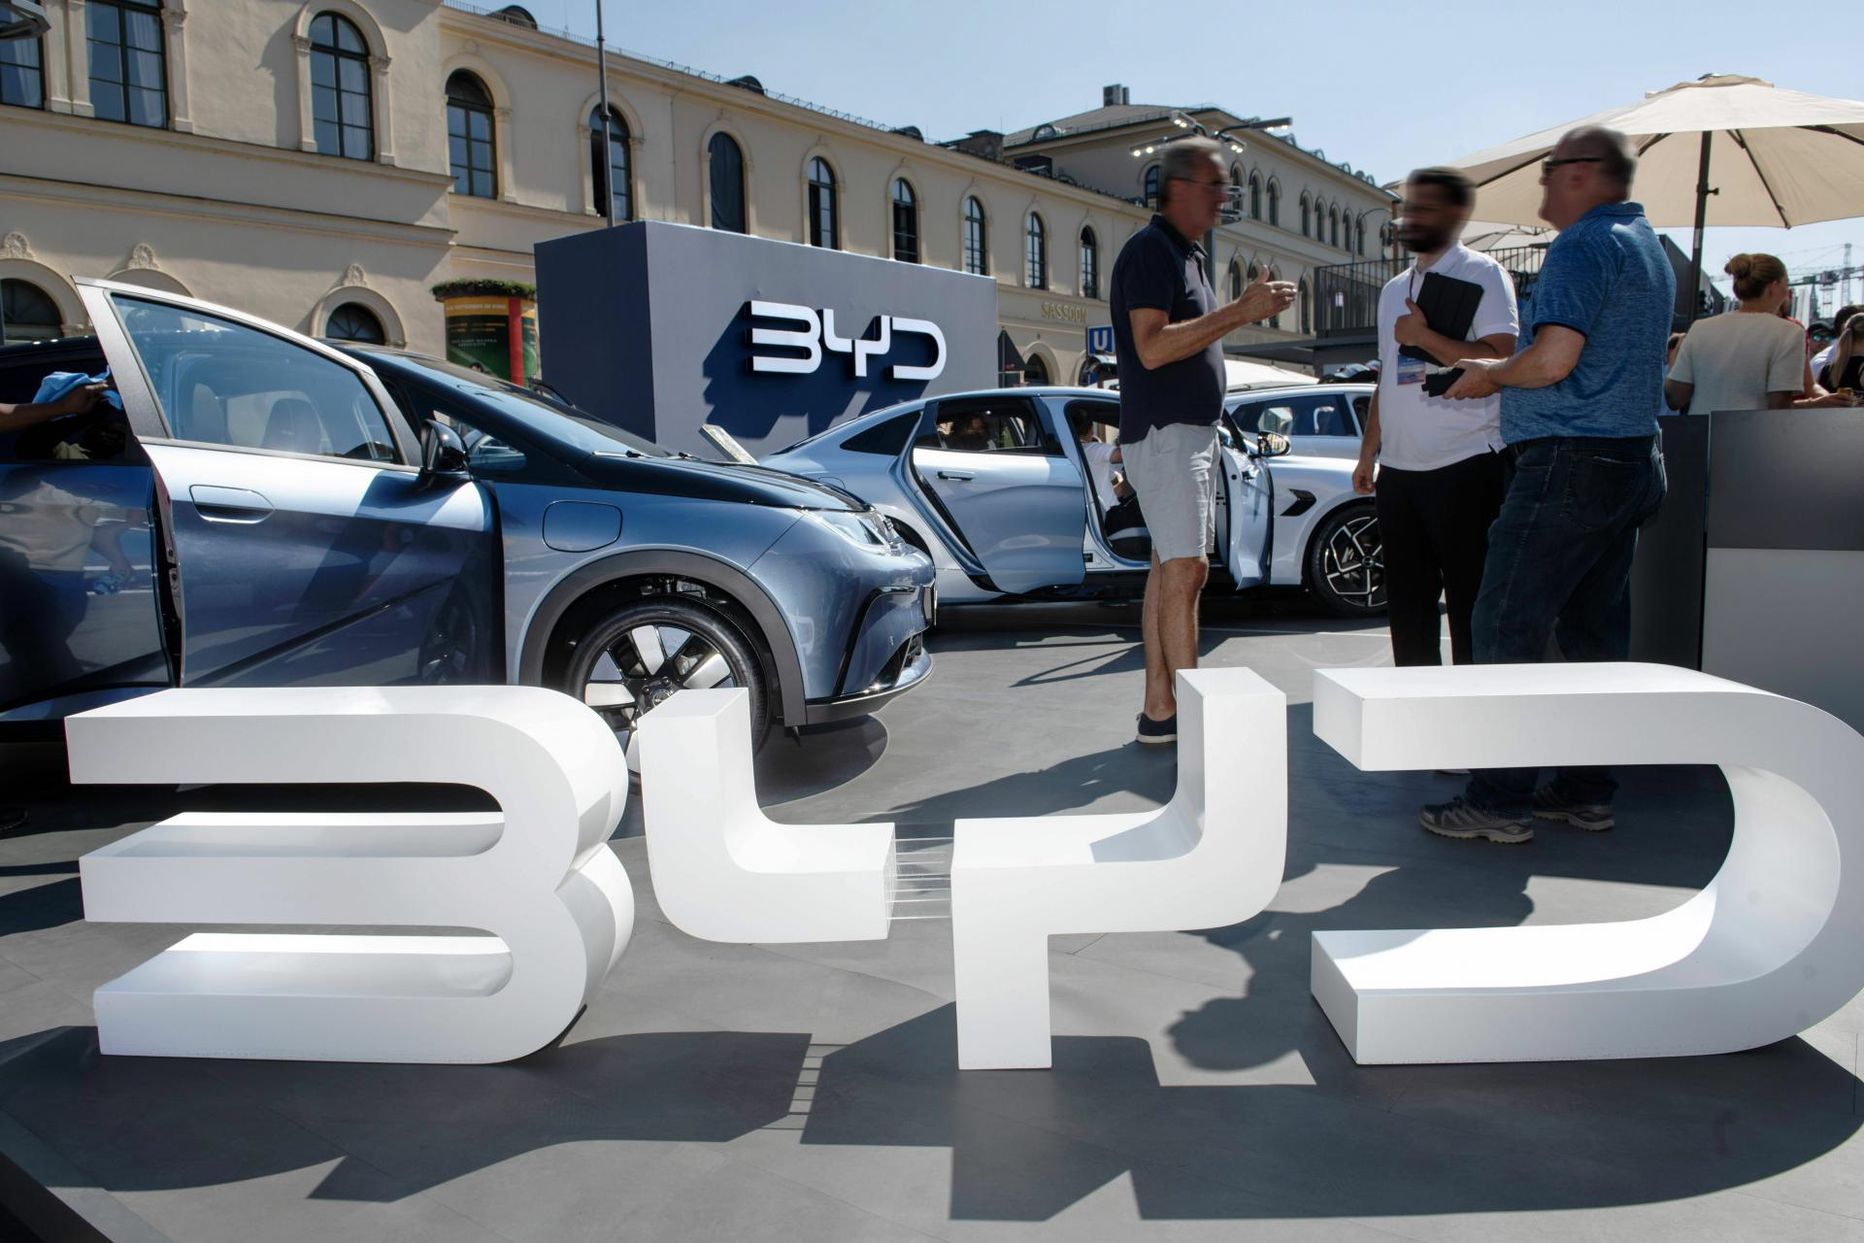 Hiina elektriautode tootja BYD oli sel aastal rahvusvahelisel motomessil Münchenis esindatud sama suurelt kui Volkswagen Grupp. 